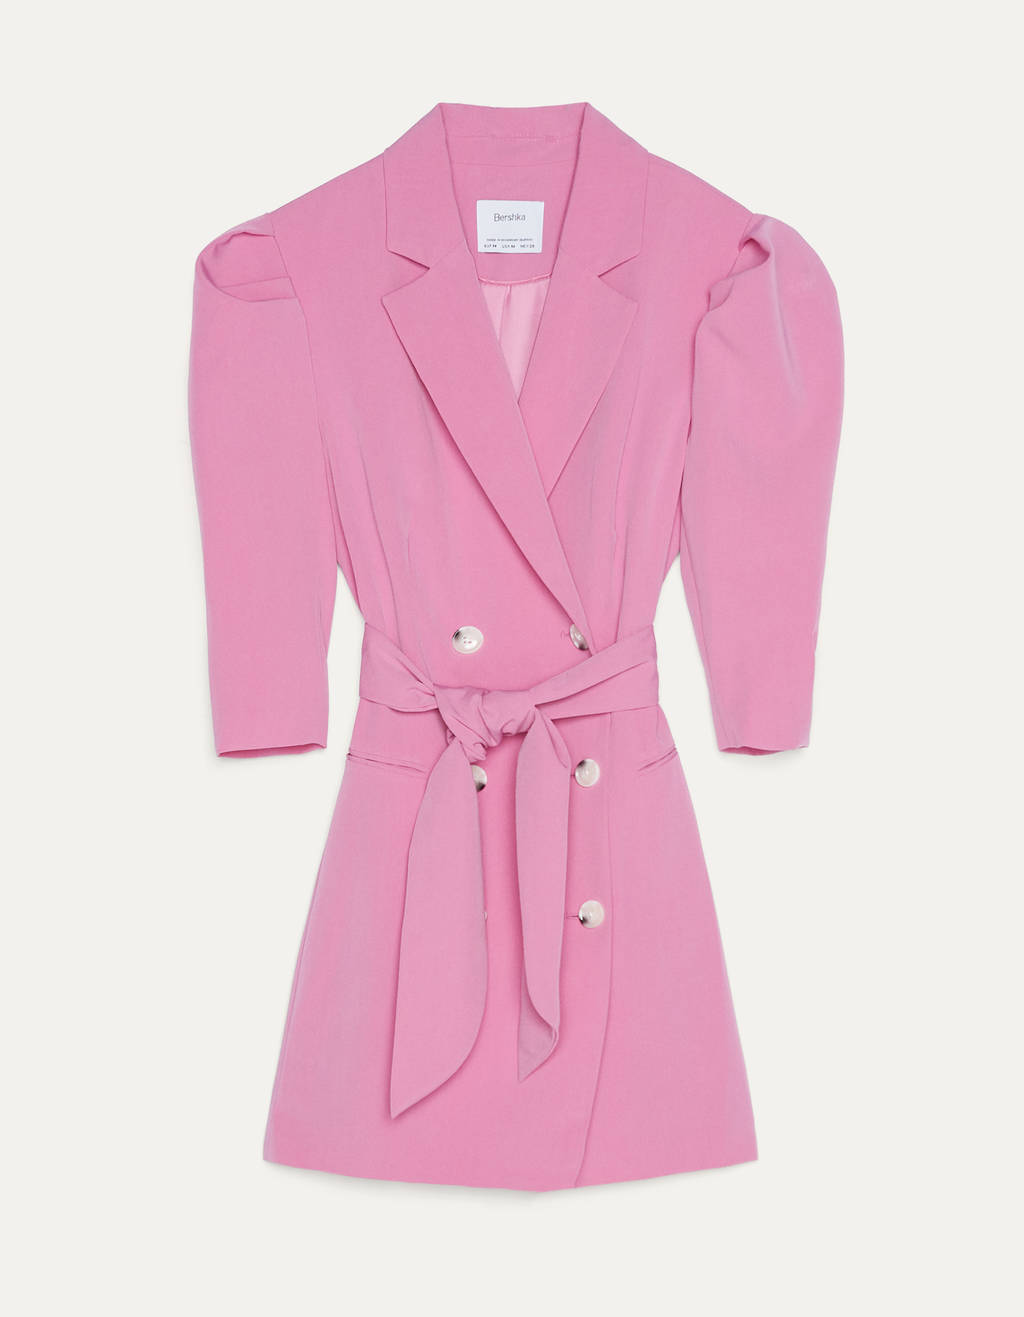 Vestido barato online, de color rosa con forma de blazer y cinturón, de la tienda Bershka